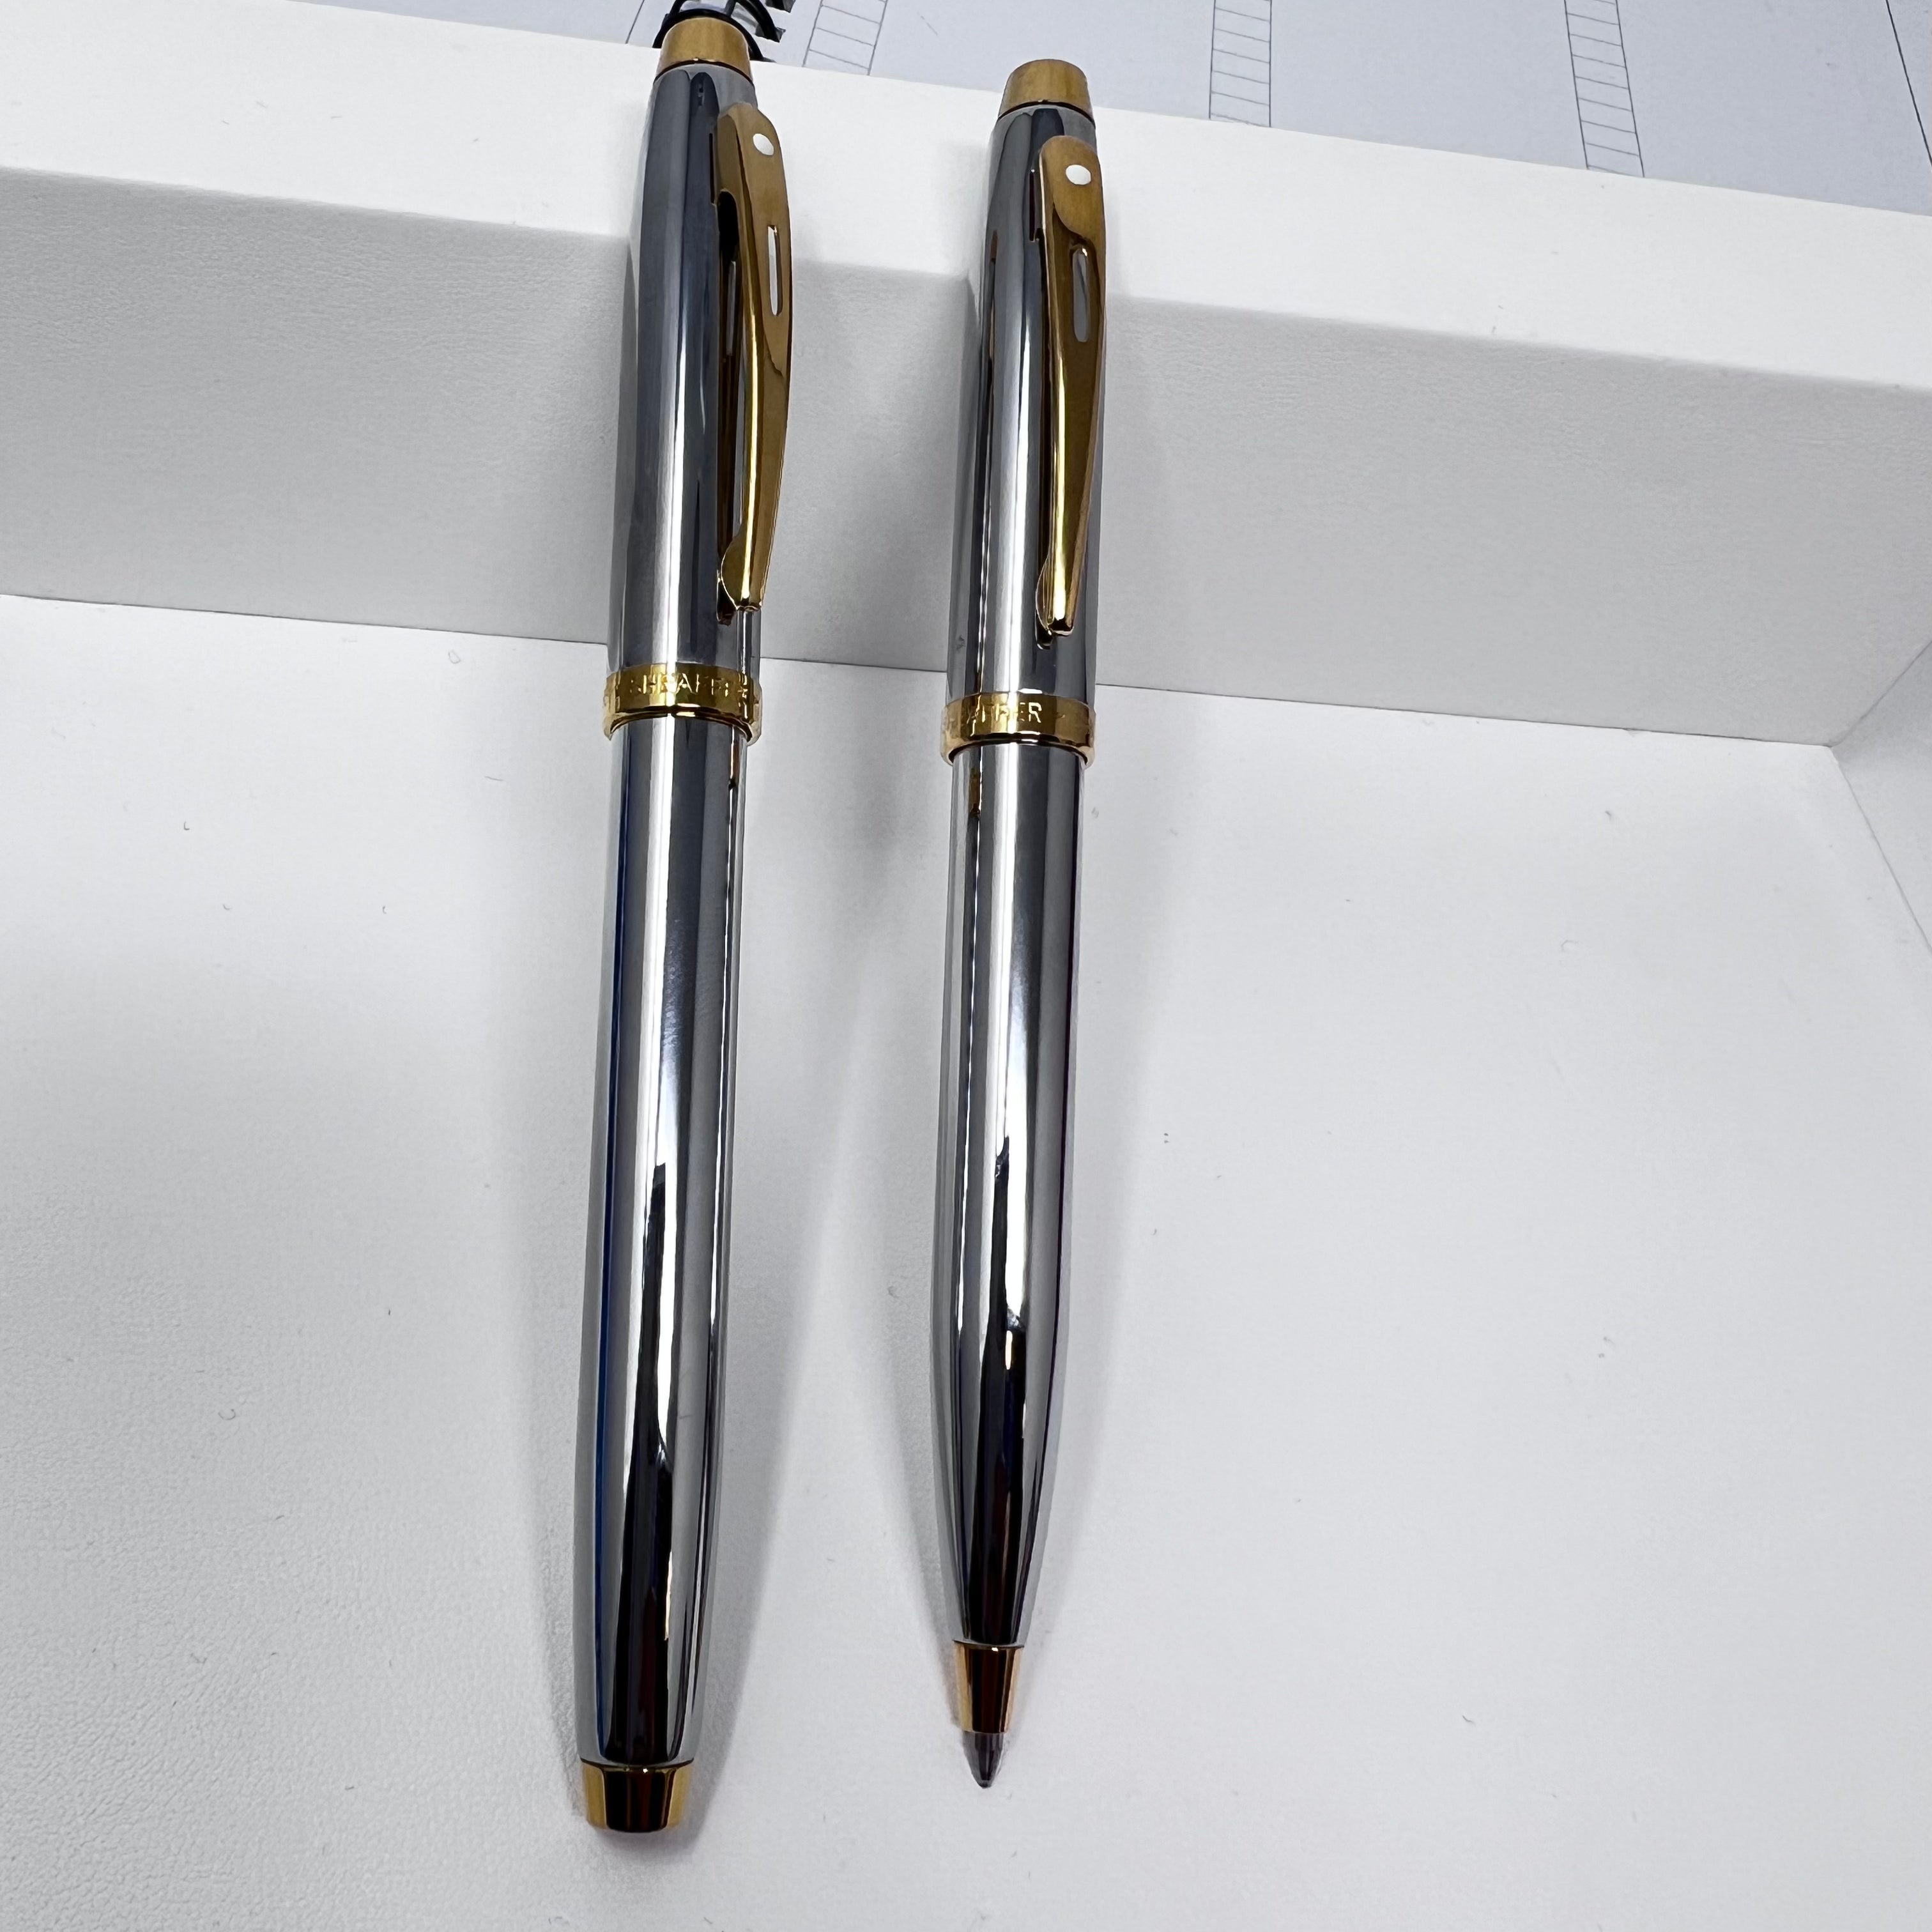 Sheaffer 100 Ballpoint Pen in PVD Gold